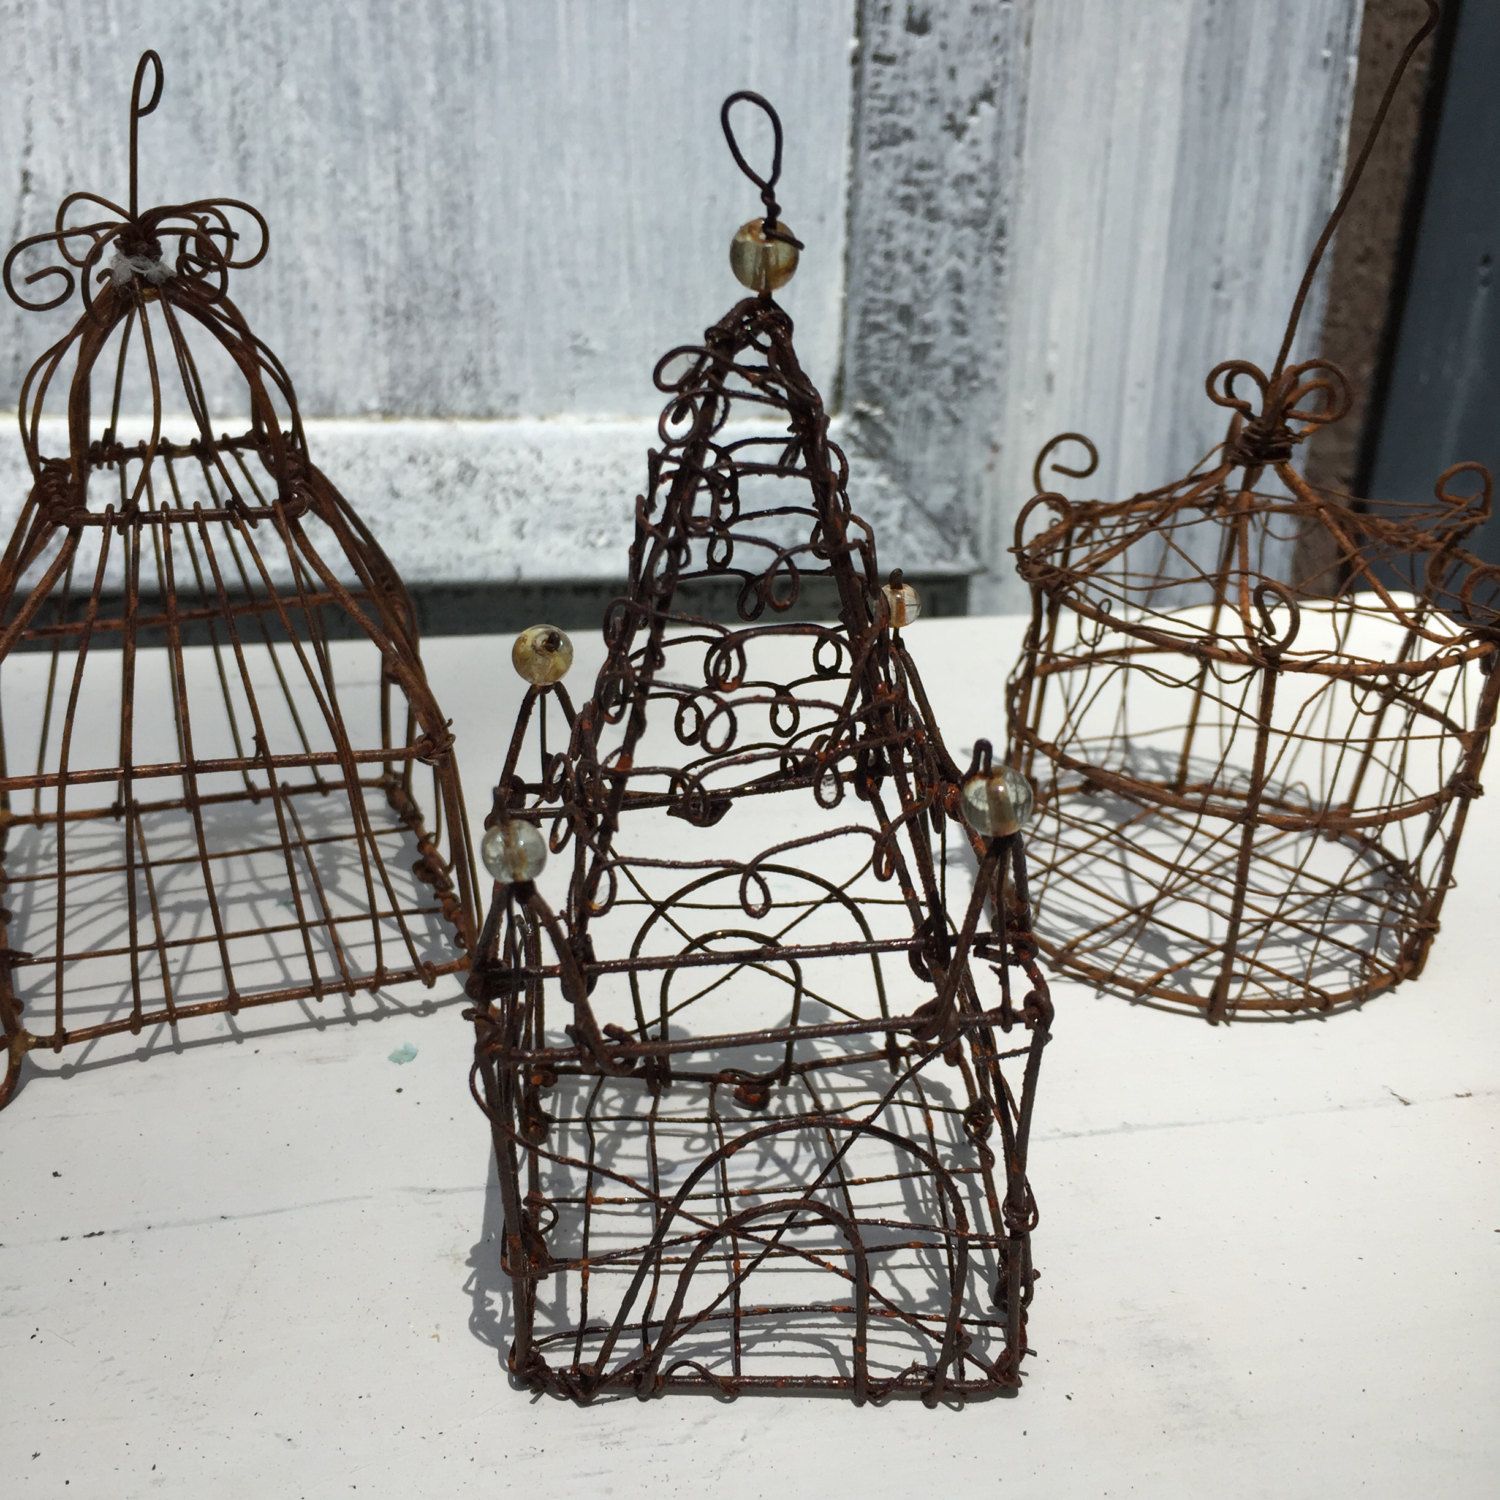 3 Miniature Rusty Birdcage,Mini Rustic Ornament, Cottage Garden ...